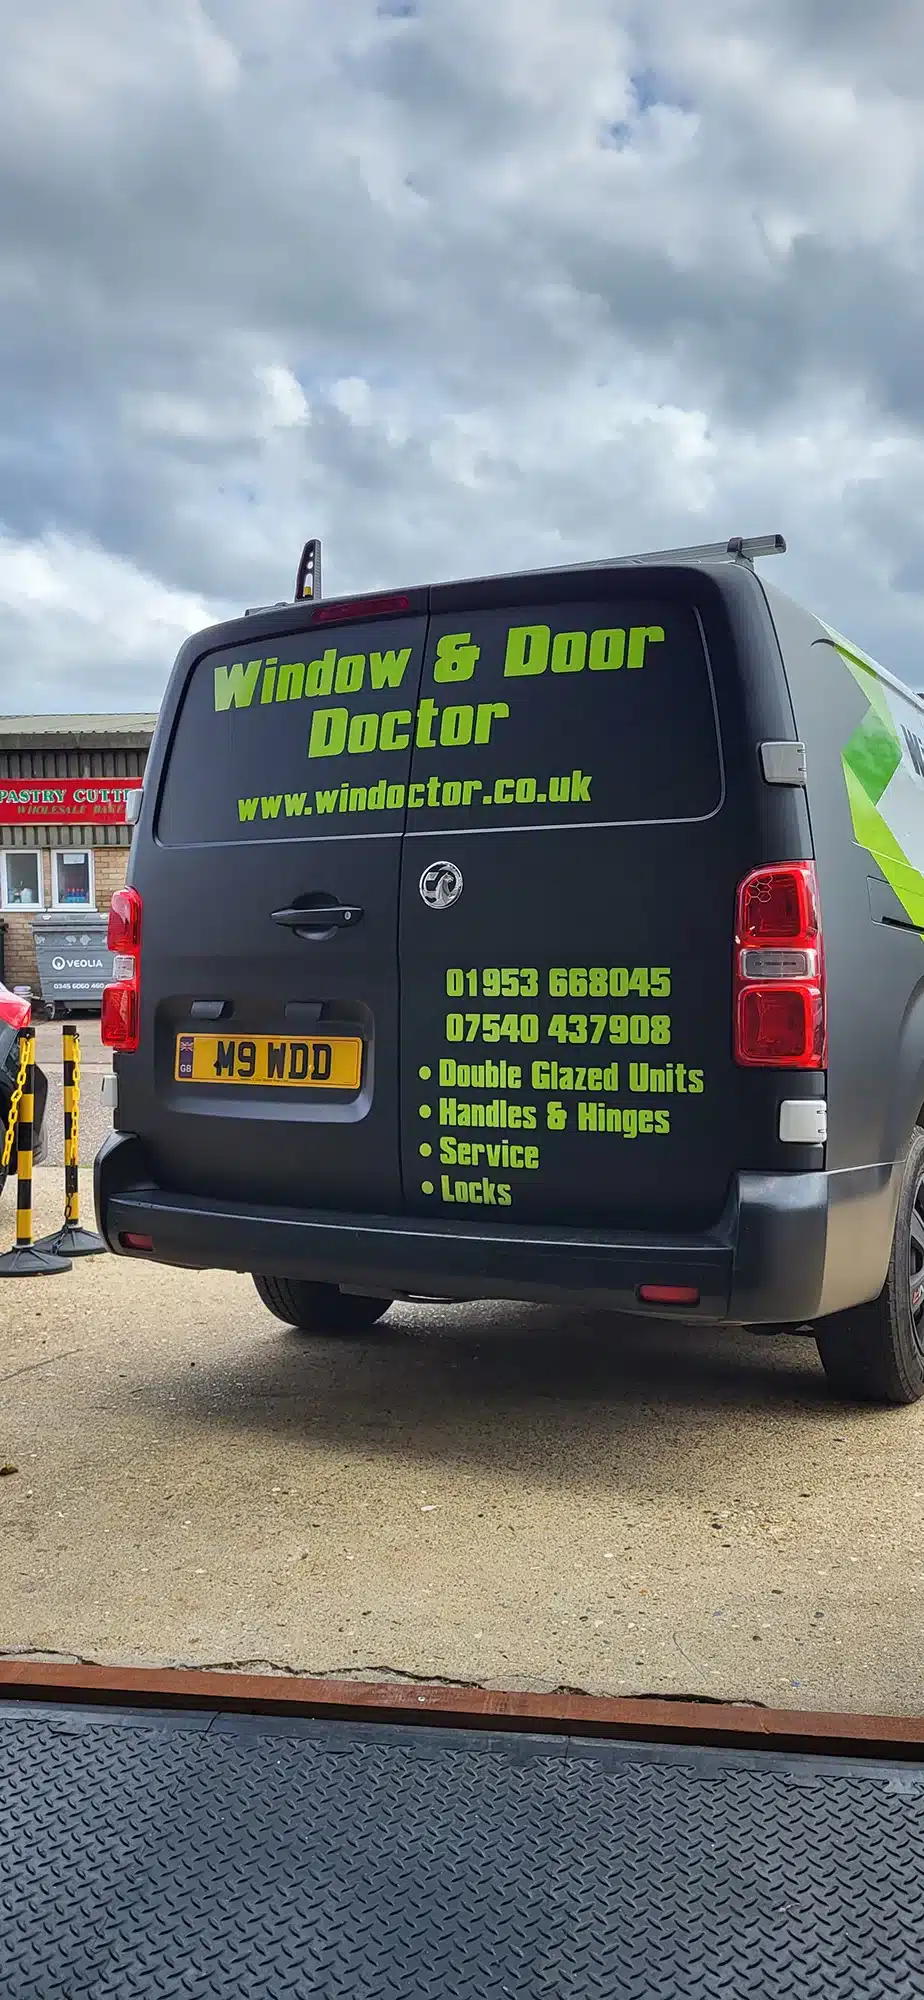 Window & Door Doctor Vehicle Graphics